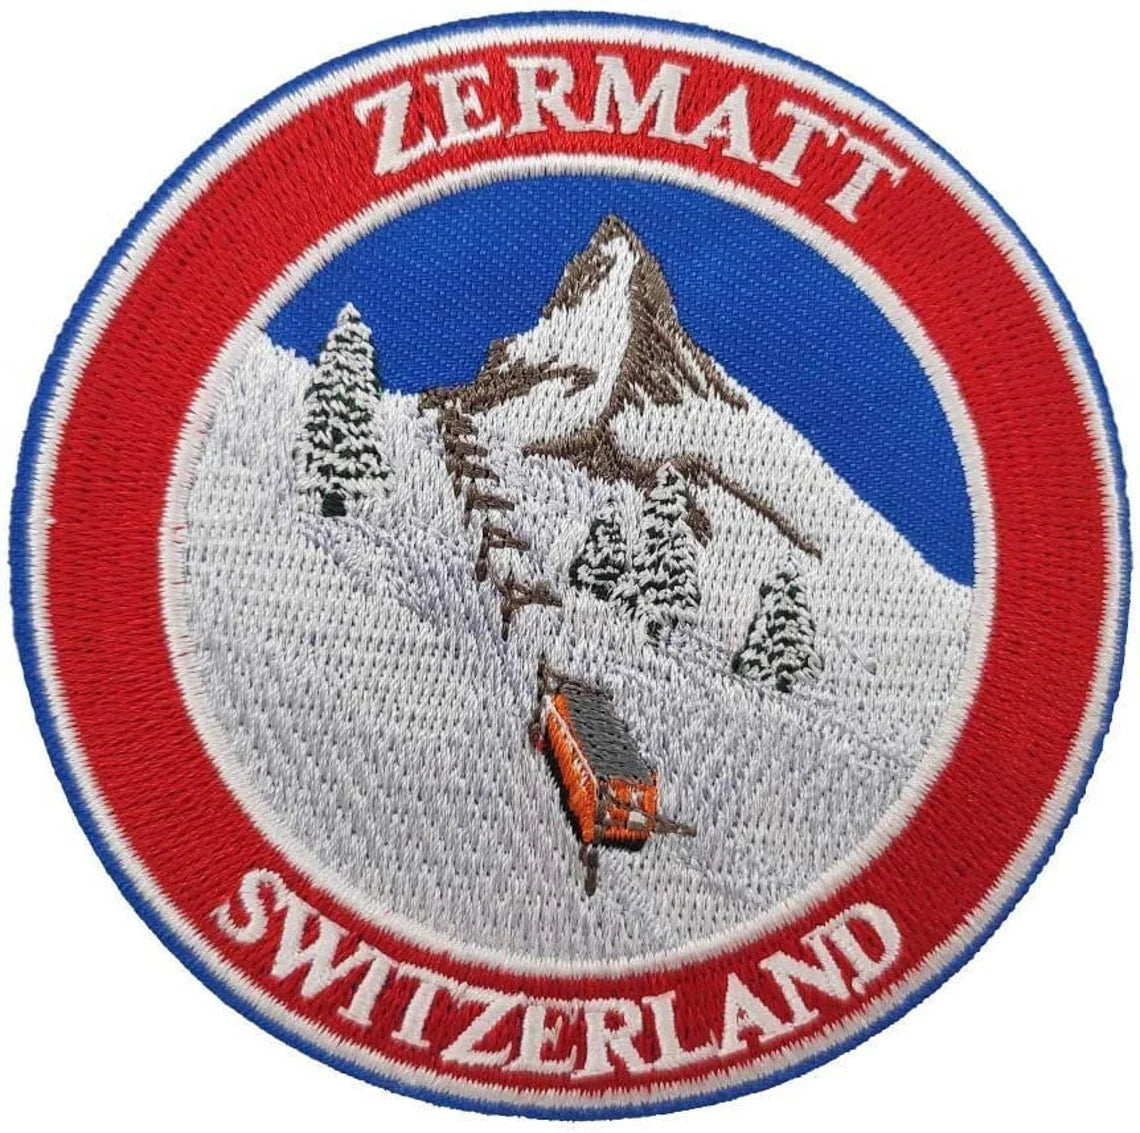 Mount Matterhorn Zermatt Switzerland Patch (3.5 Inch) Iron/Sew-on Badge